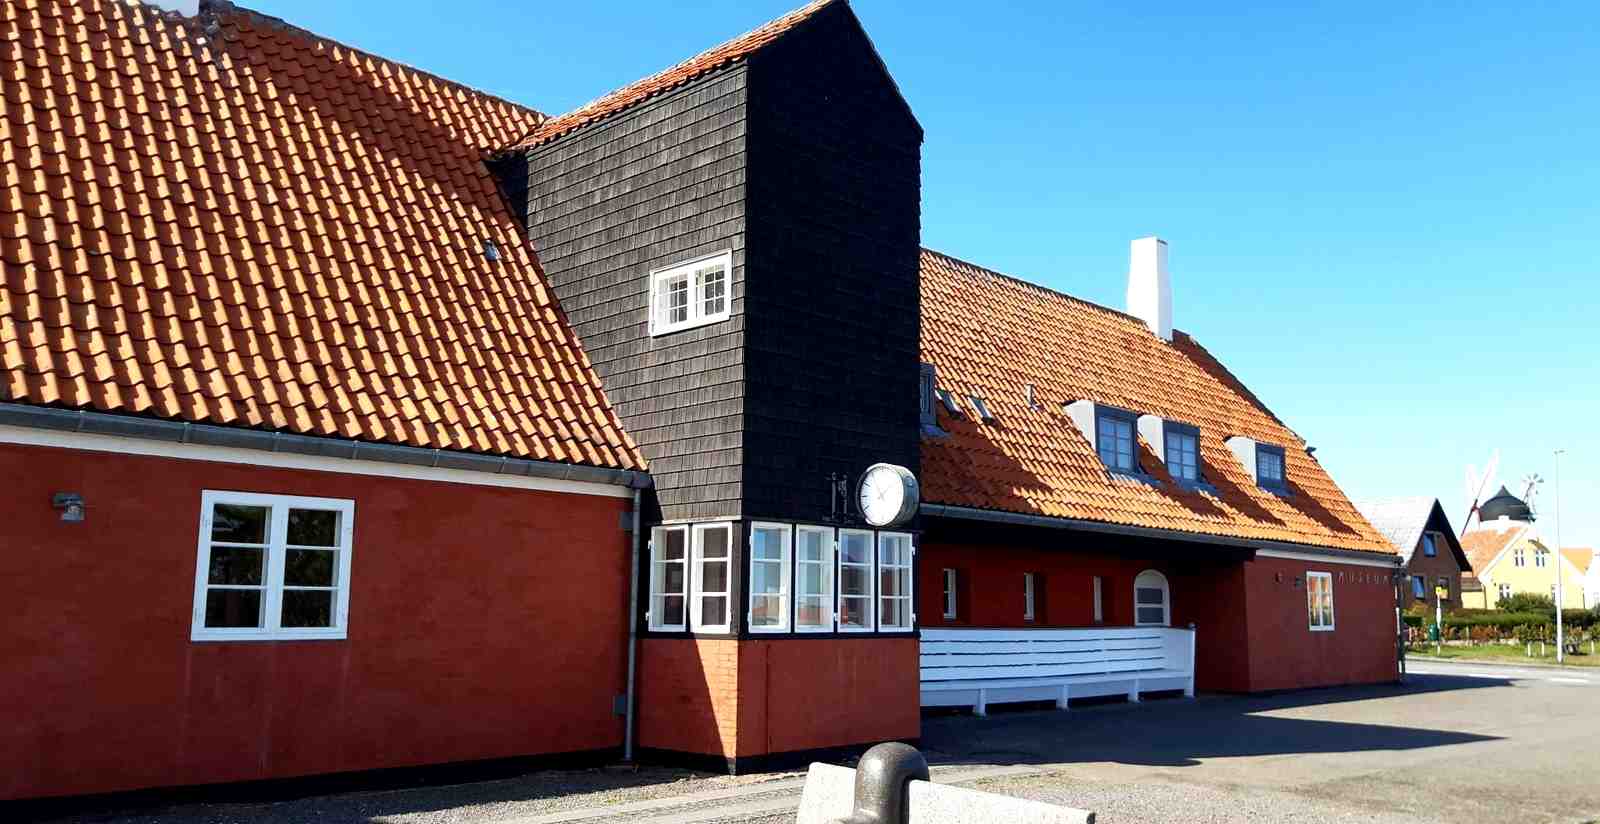 Gudhjem Station (Stationsvej), Bornholm